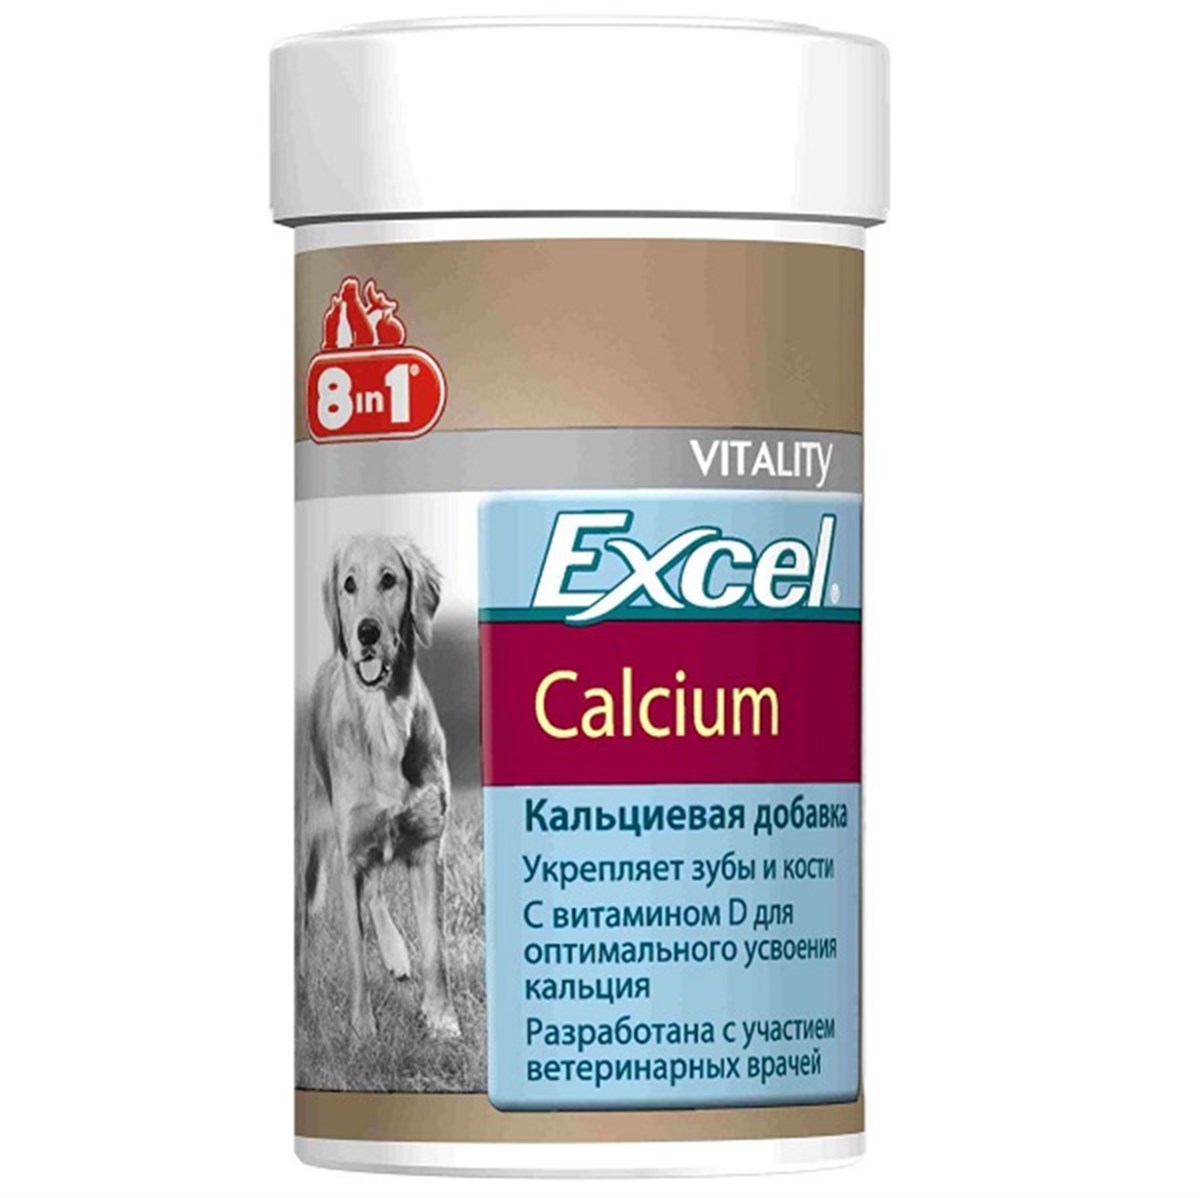 8in1 Excel Calcium Köpek Kalsiyum Tableti 70 Tablet